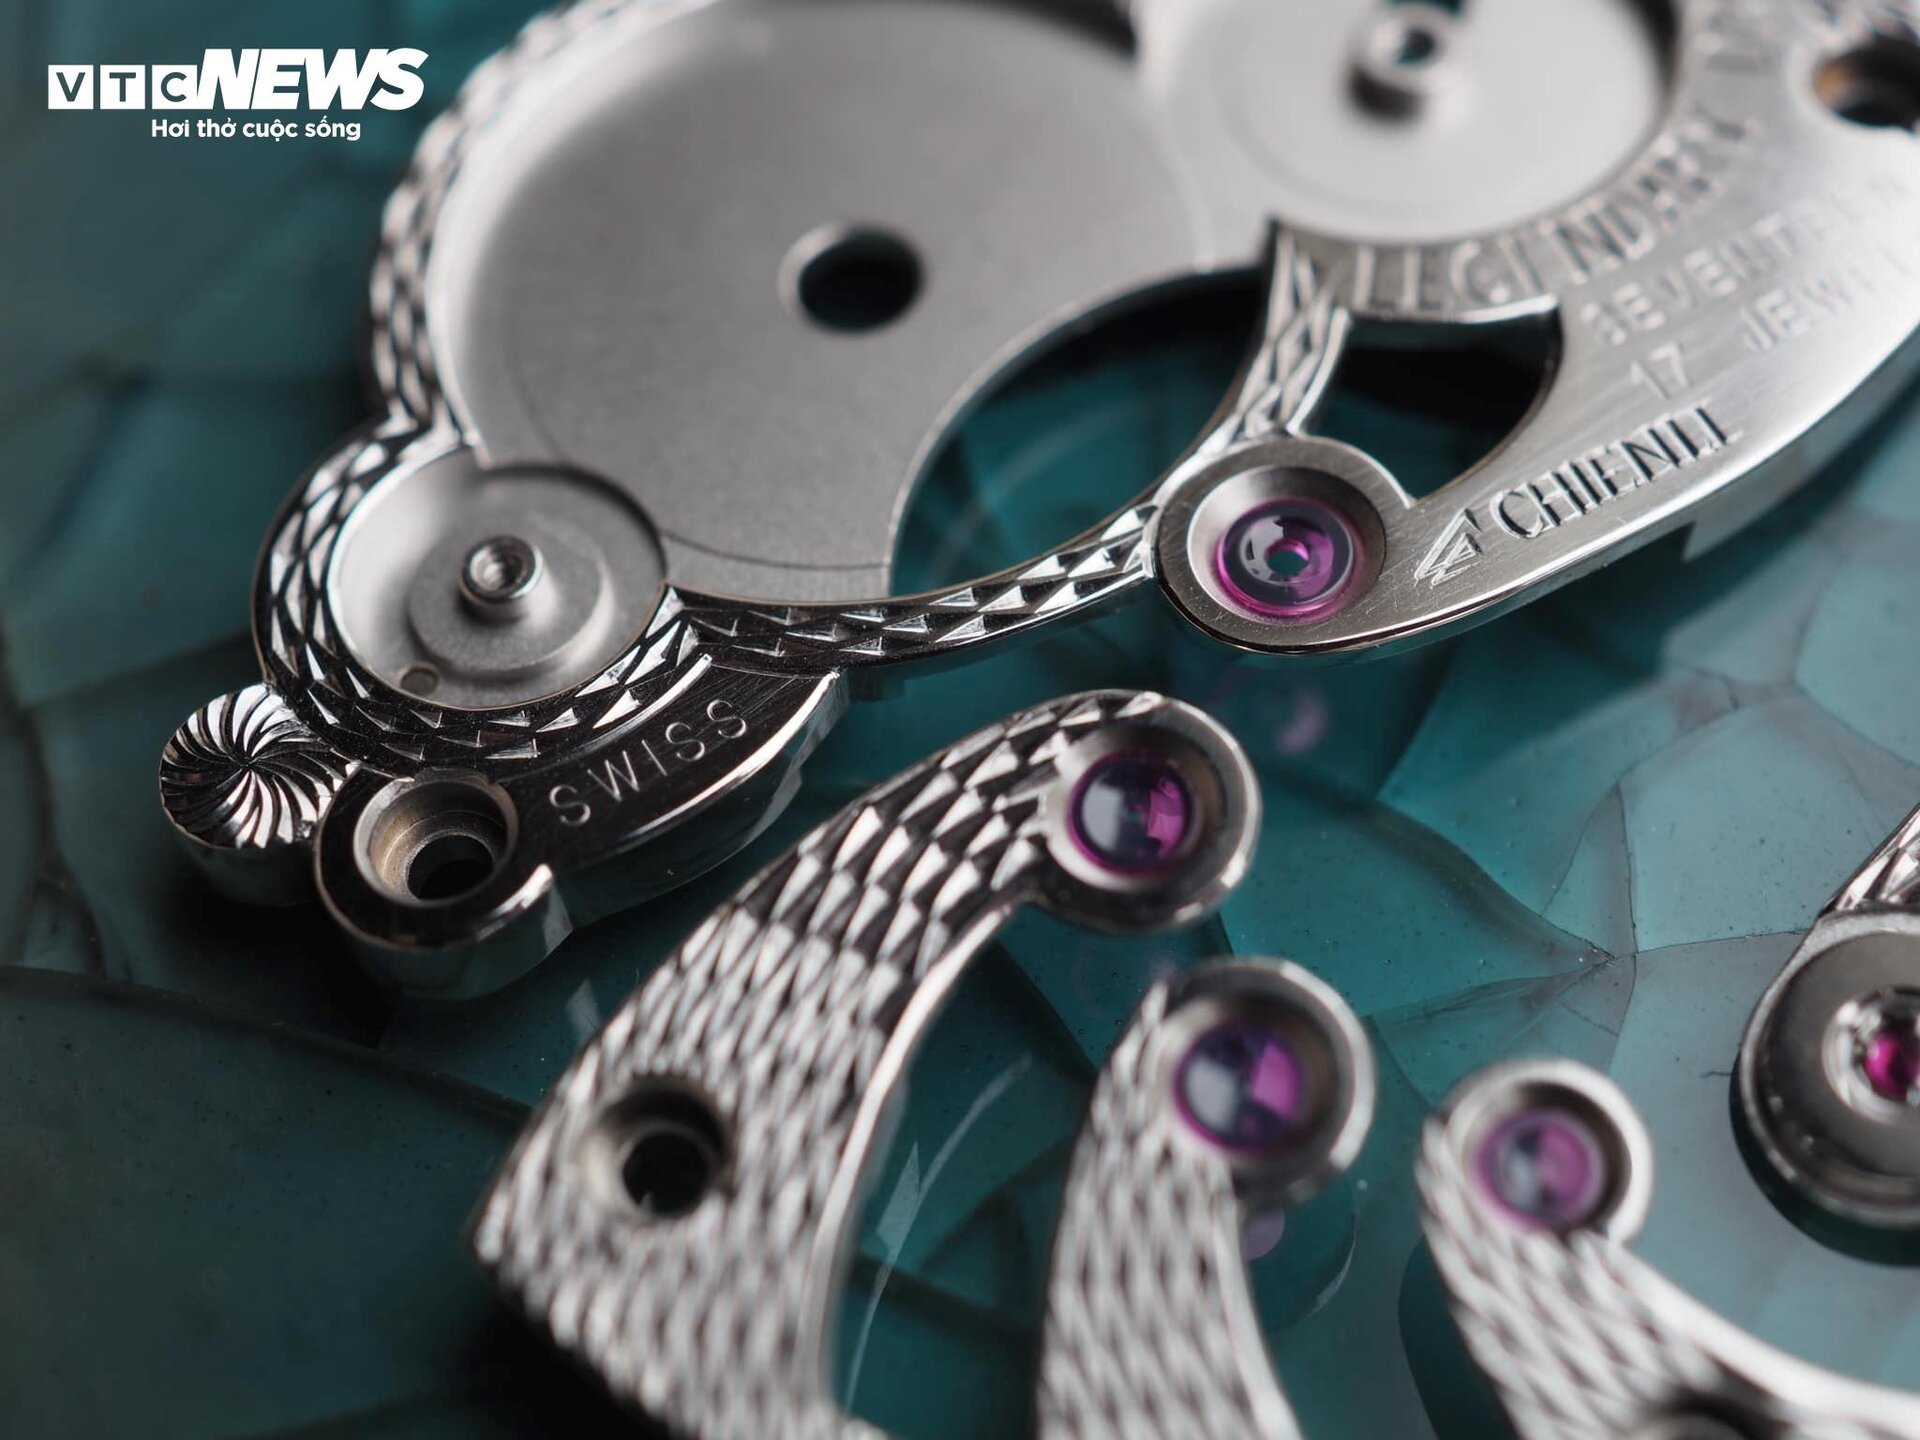 Chiếc đồng hồ bằng titan được thợ thủ công Việt định giá 300 triệu đồng - 8